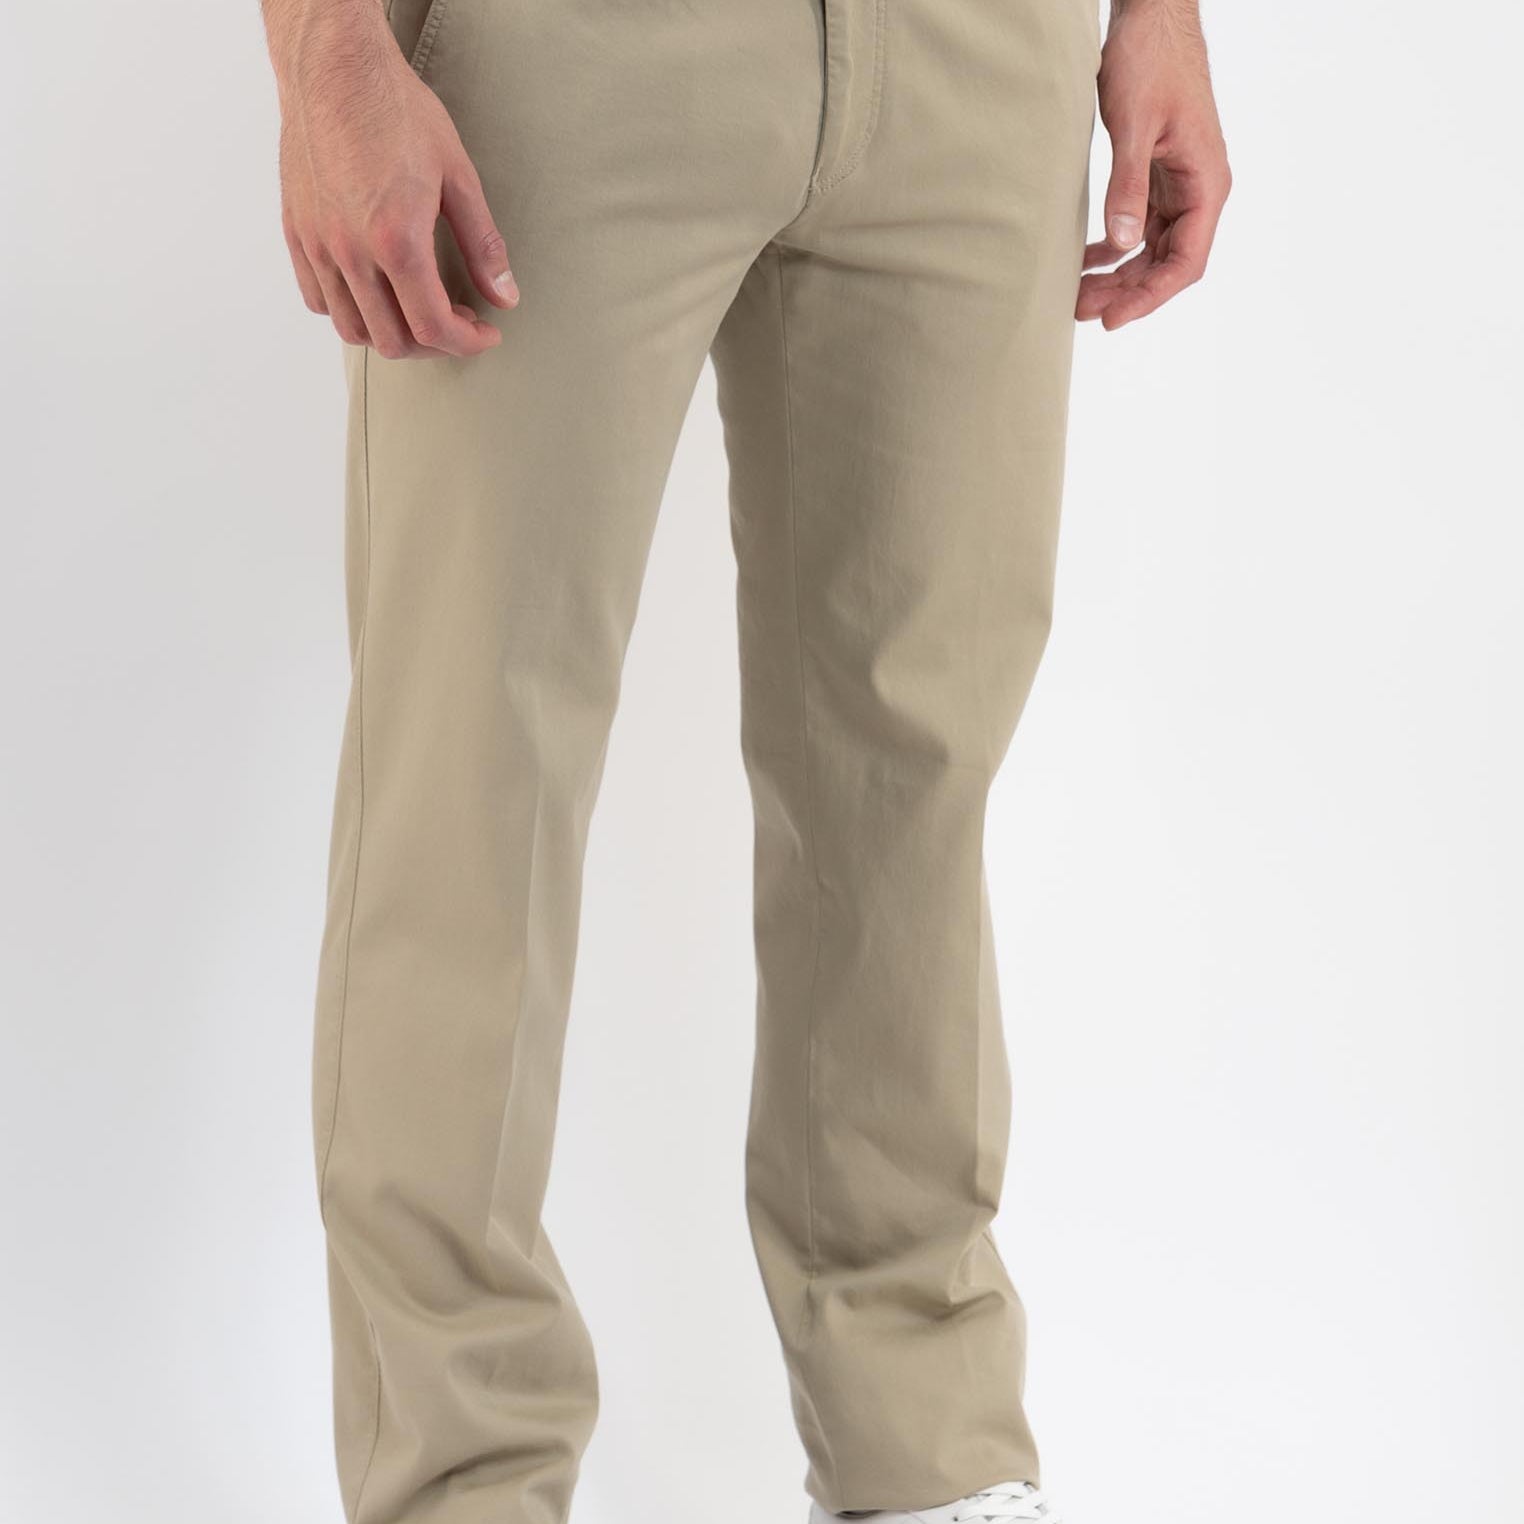 Pantalone dritto con elastico BUGATTI 1453-36307 MARIO